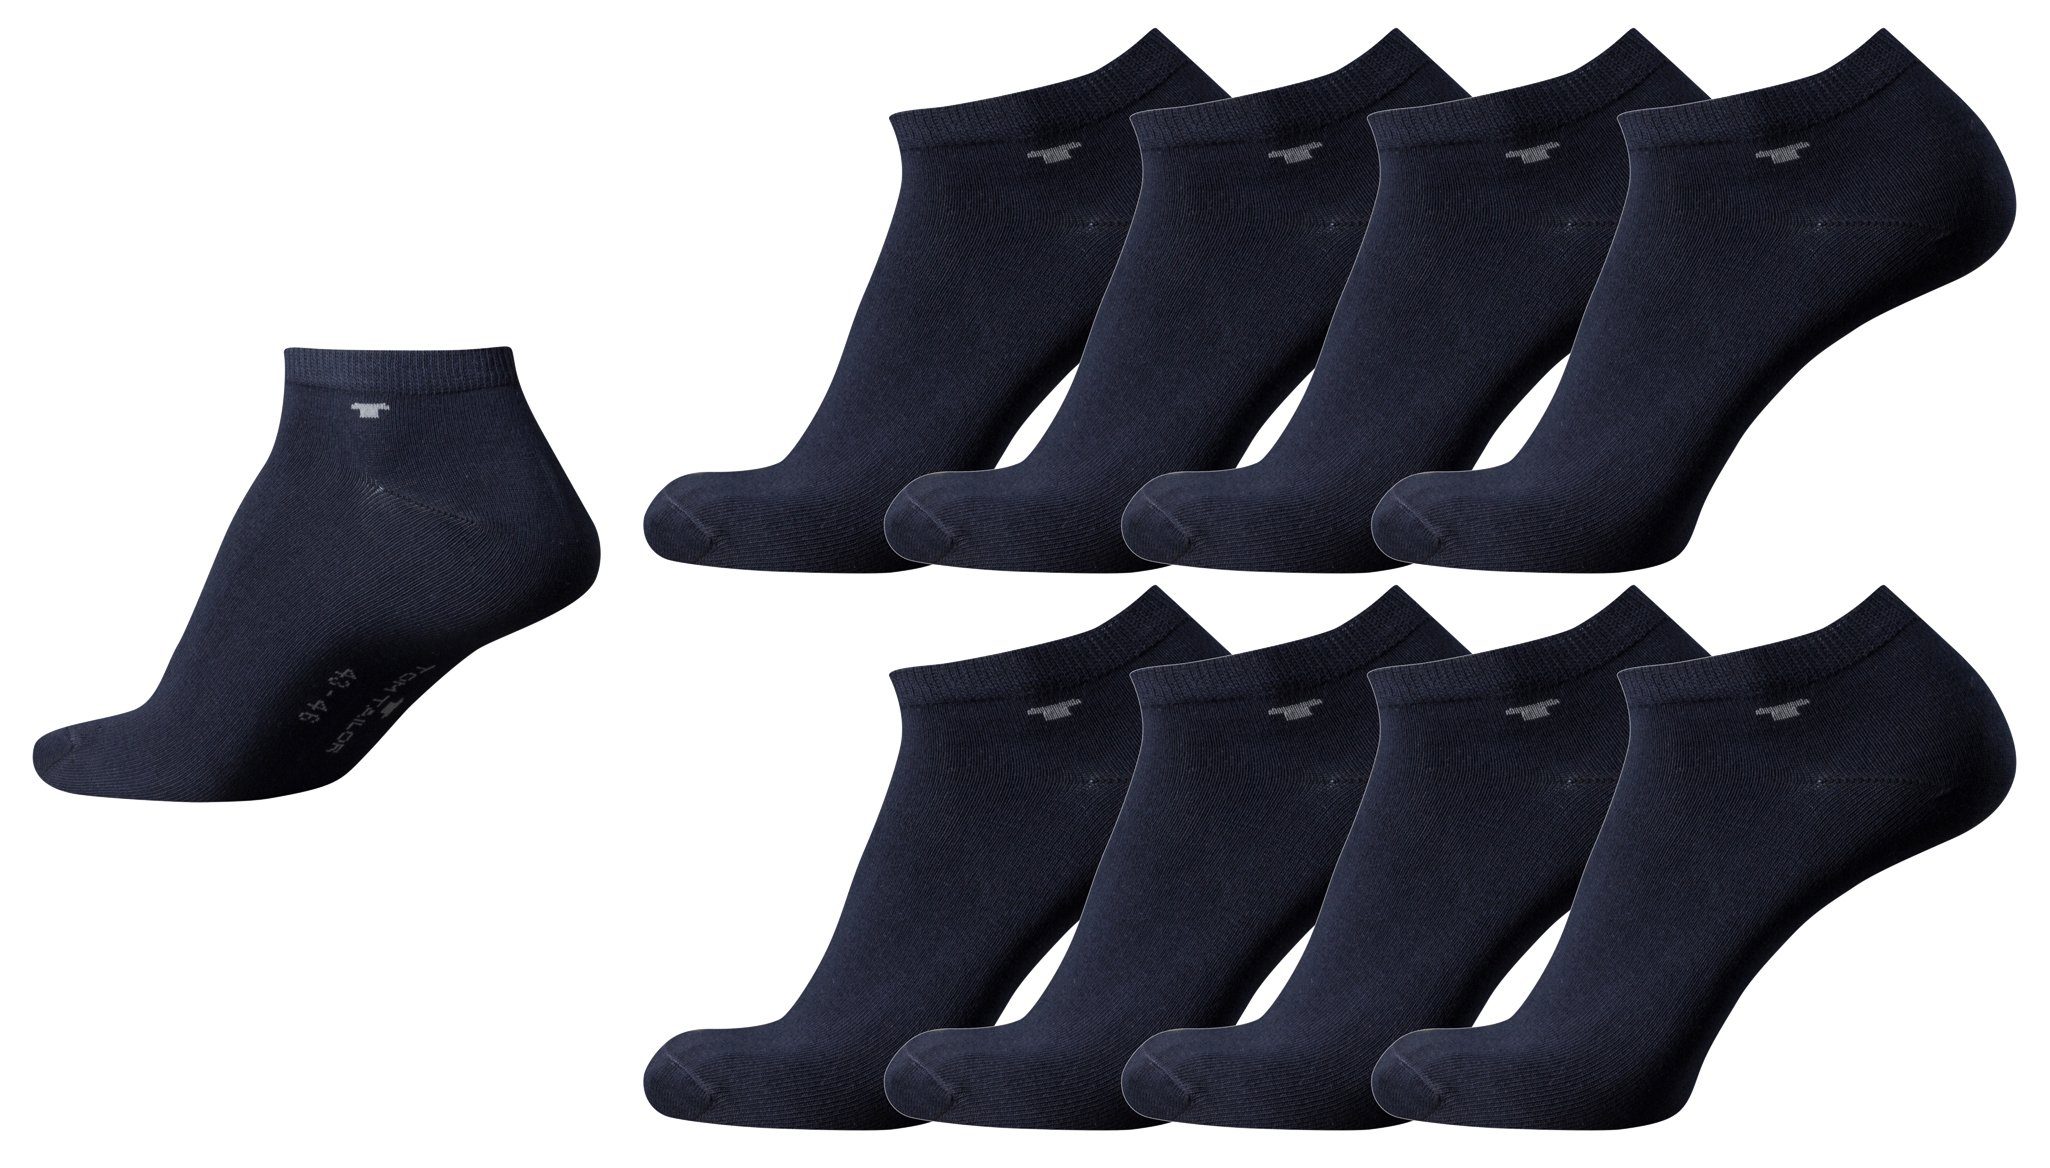 TOM TAILOR Socken TTsneaker545_Set838 Tom Tailor 8er Pack Sneaker Socken dunkel-blau Mehrpack Strümpfe Socks dark navy Füsslinge